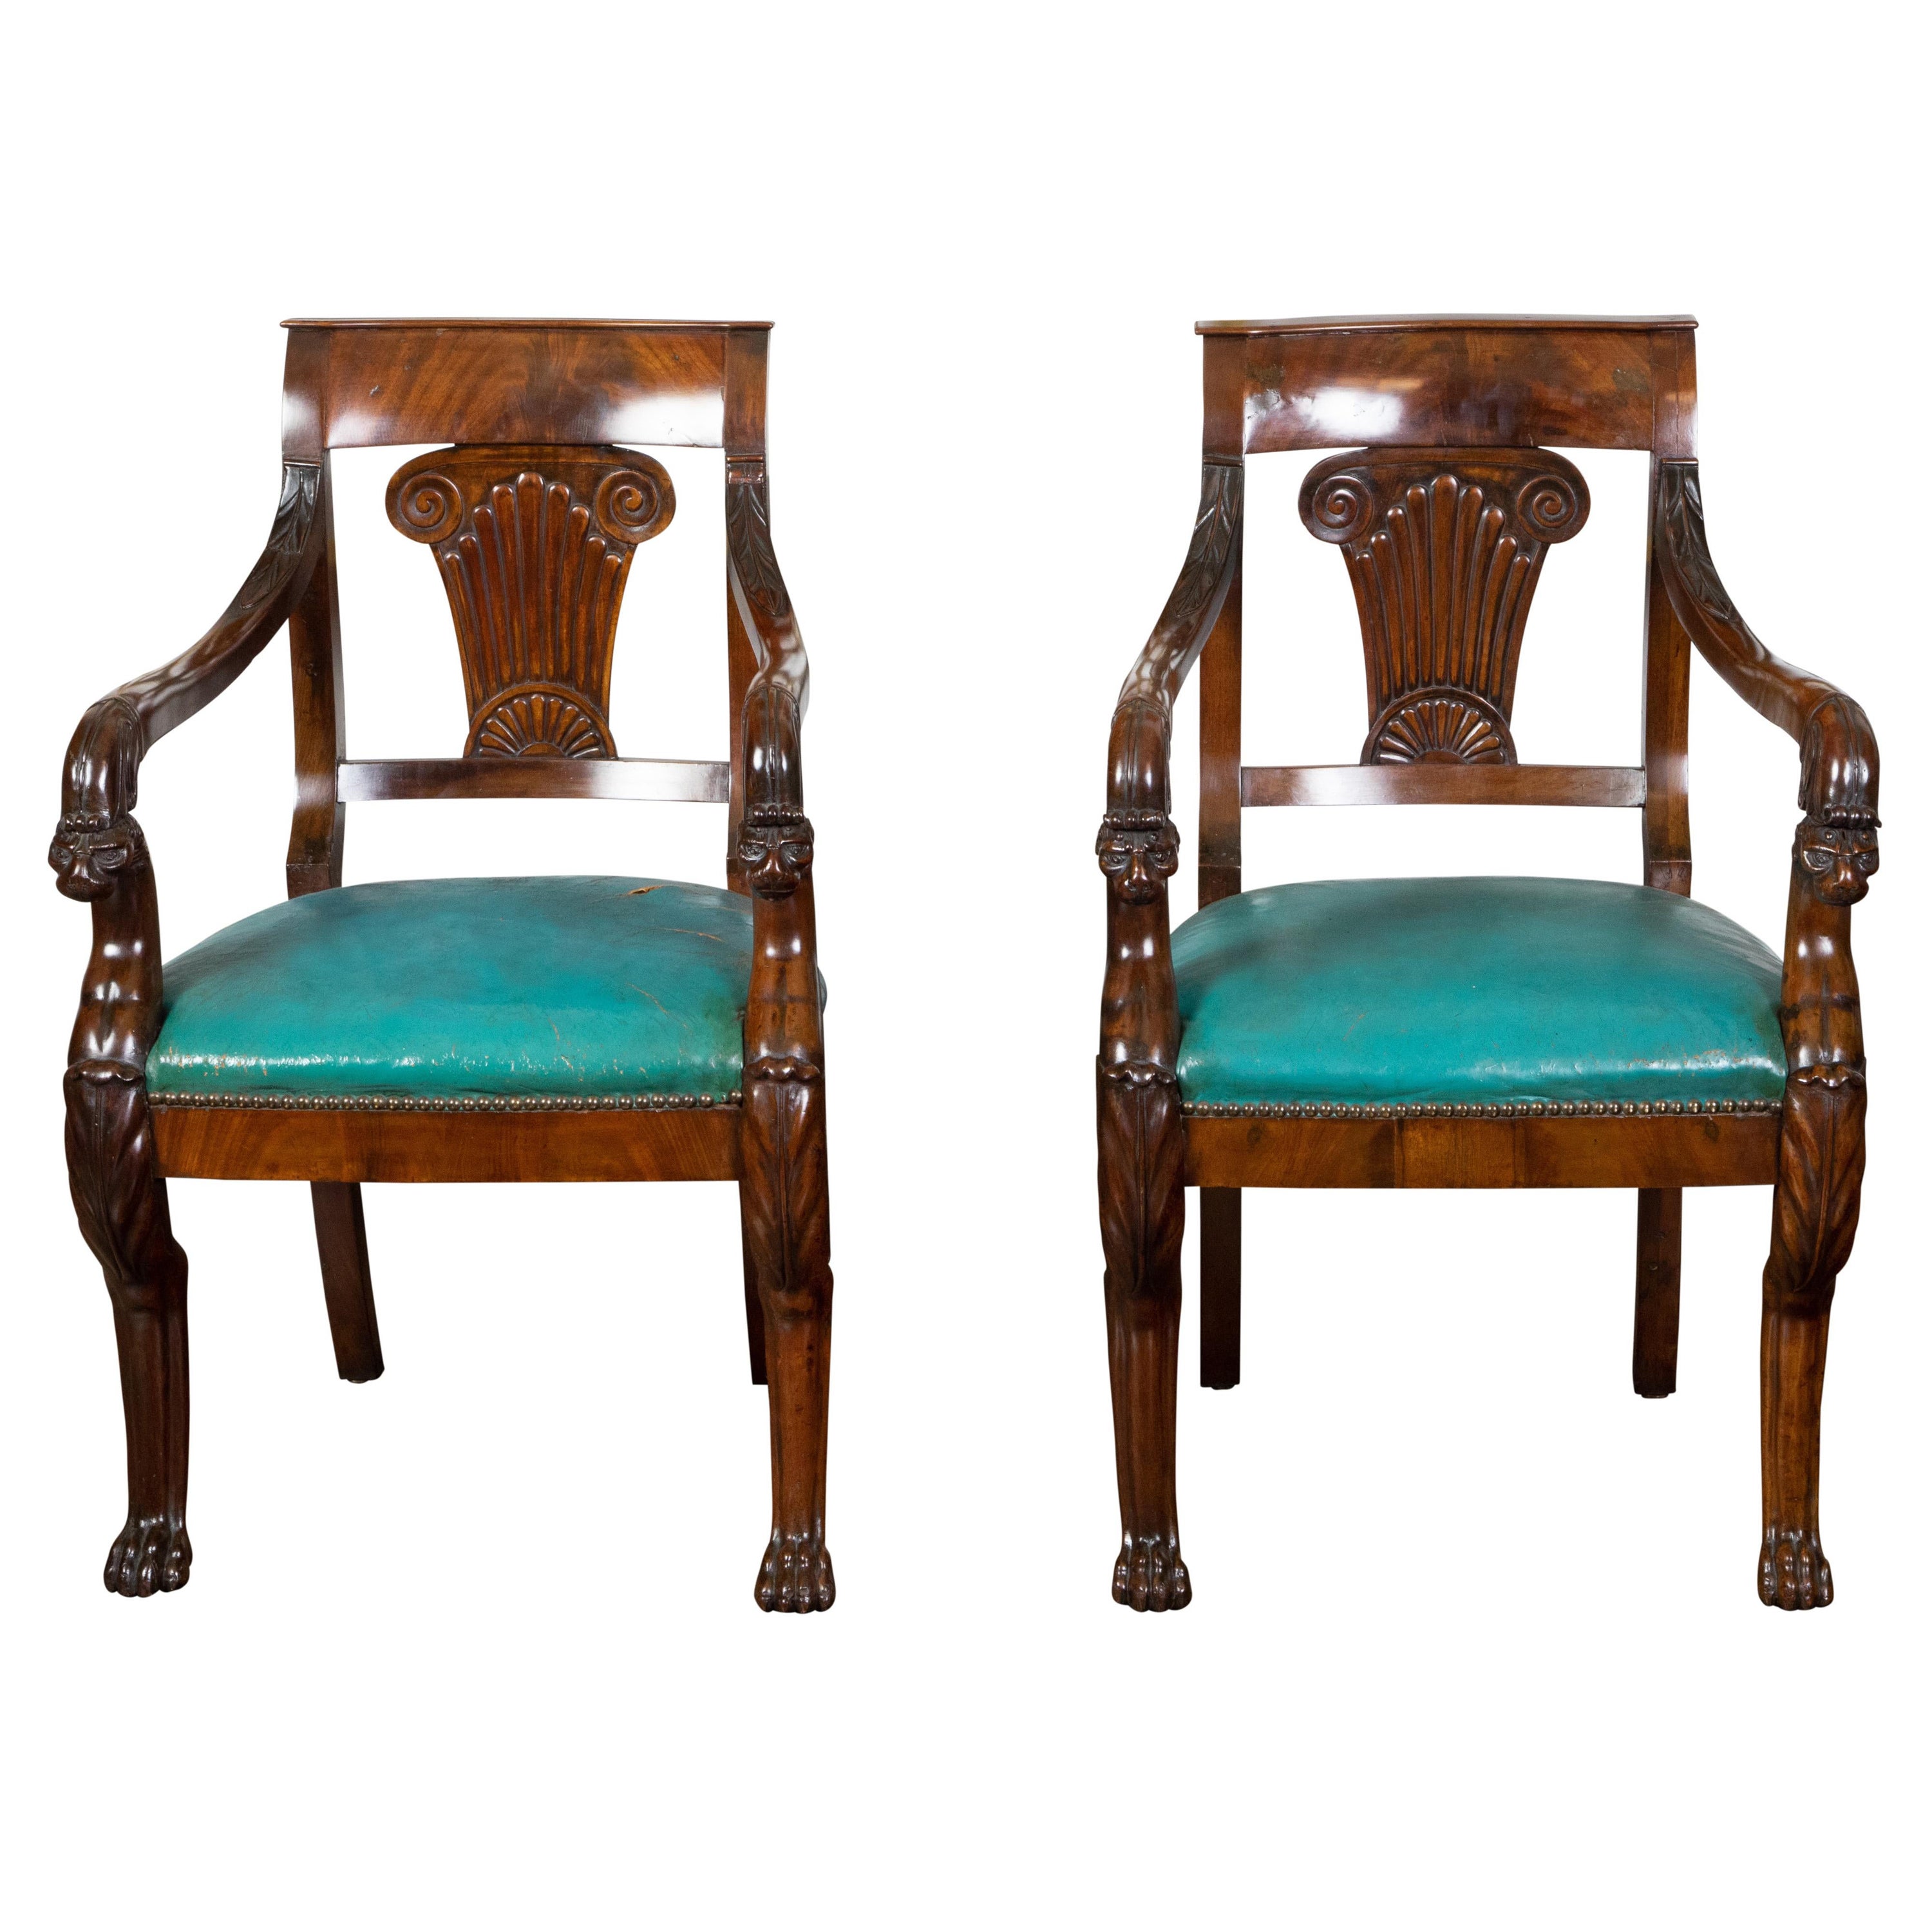 Paire de chaises de style Régence anglaise des années 1840 en acajou avec chapiteaux ioniques et griffons